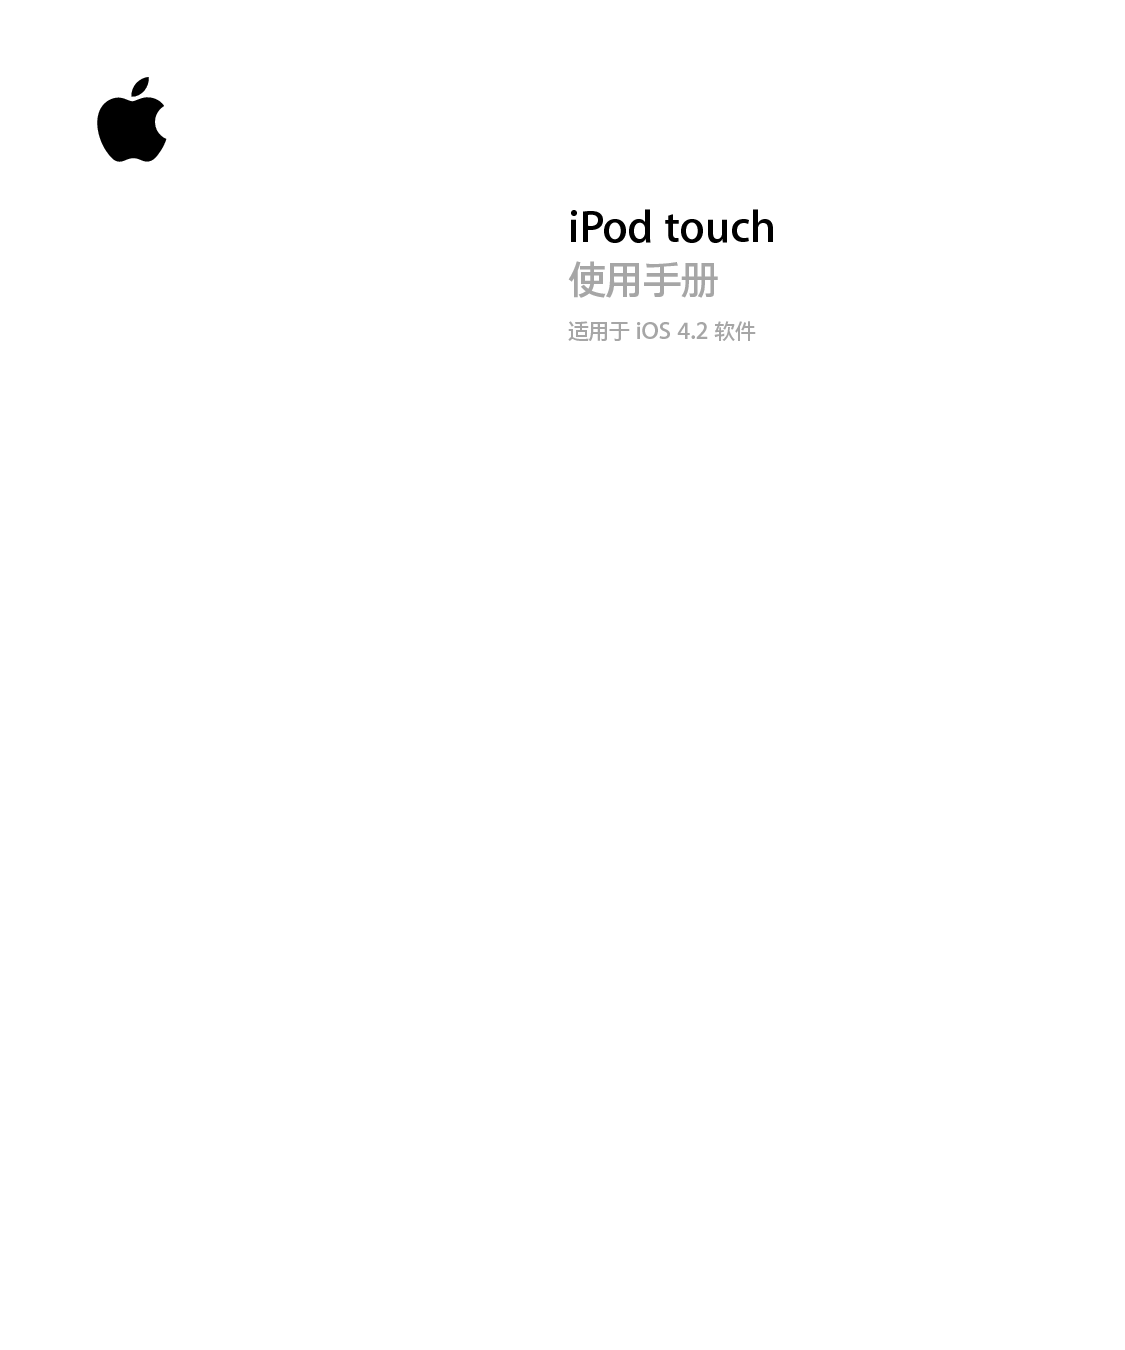 苹果 Apple iPod touch iOS 4.2 使用手册 封面